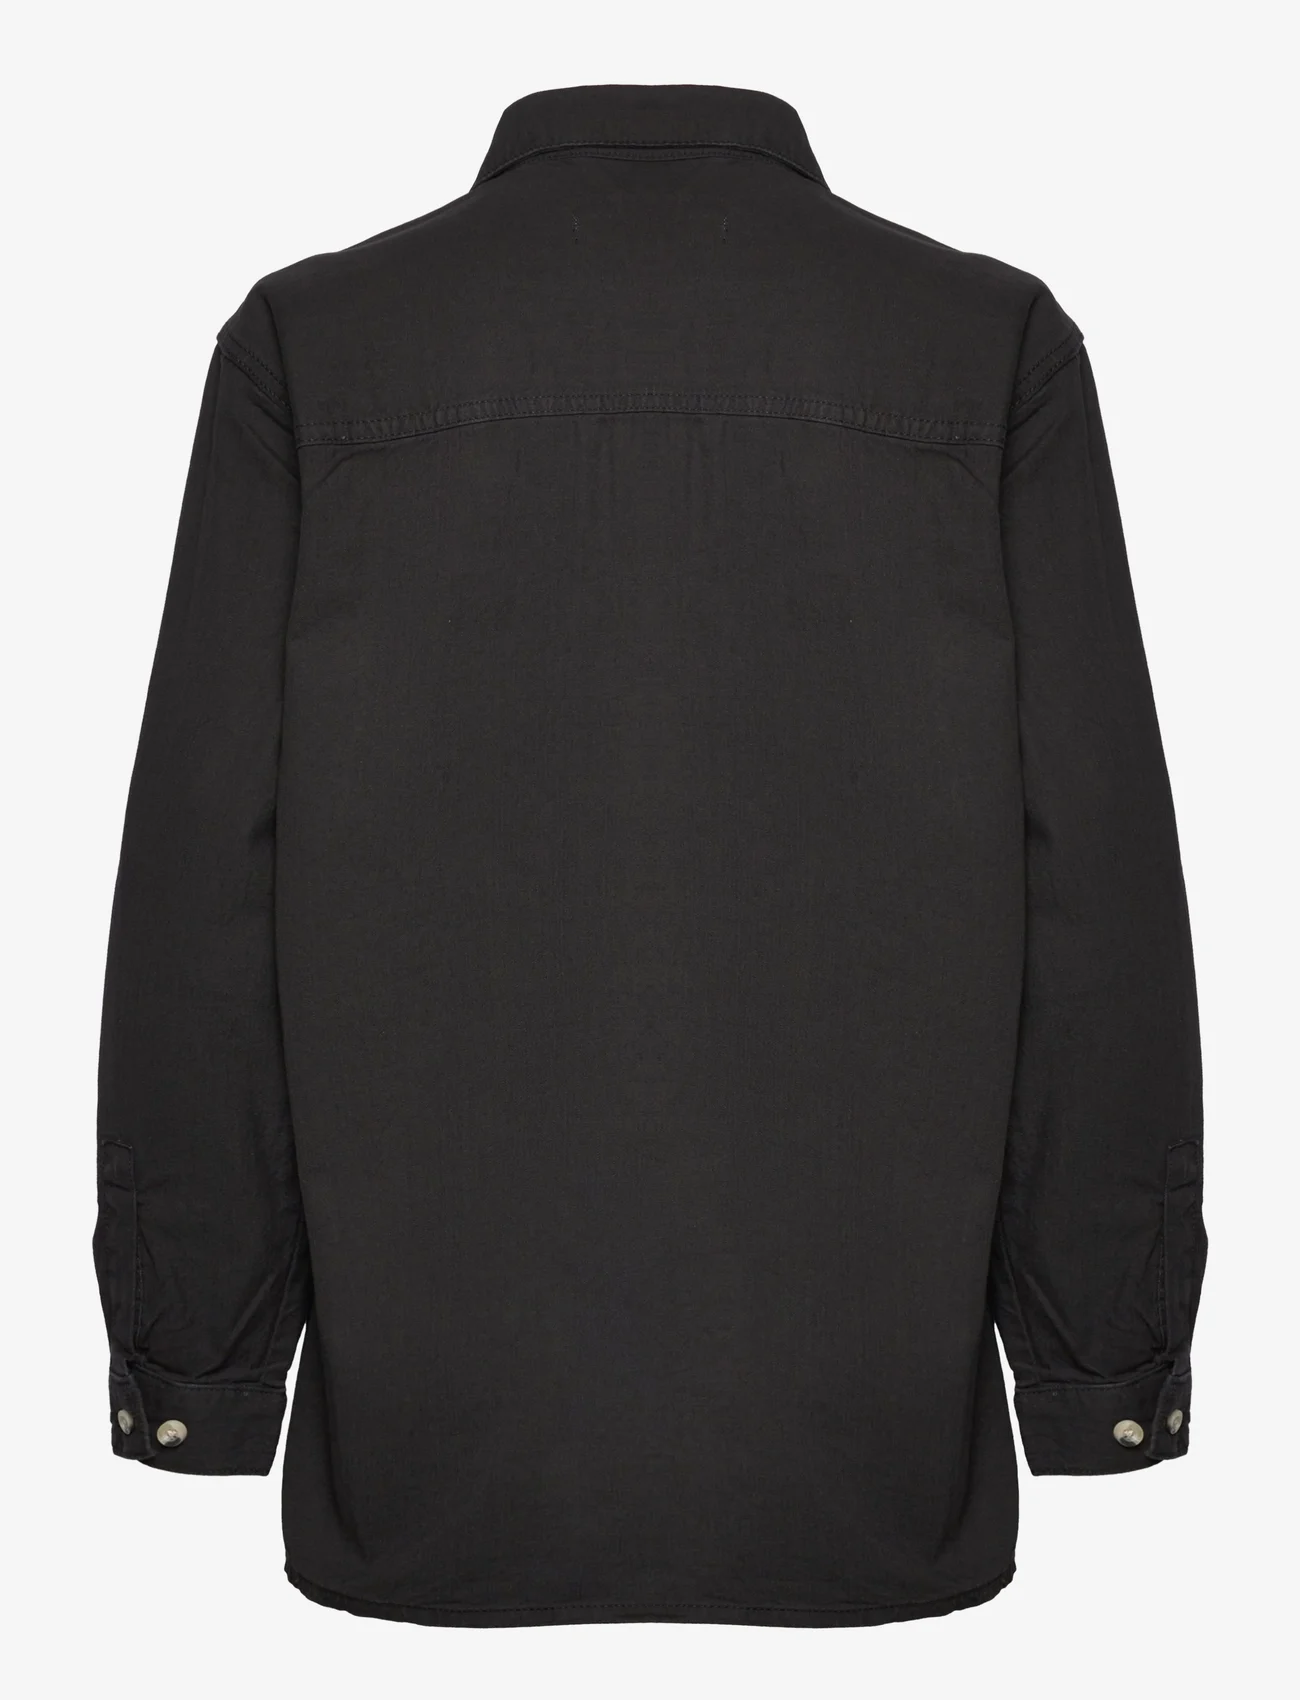 Denim project - DPWCLARA SHIRT - džinsiniai marškiniai - 001 black - 1